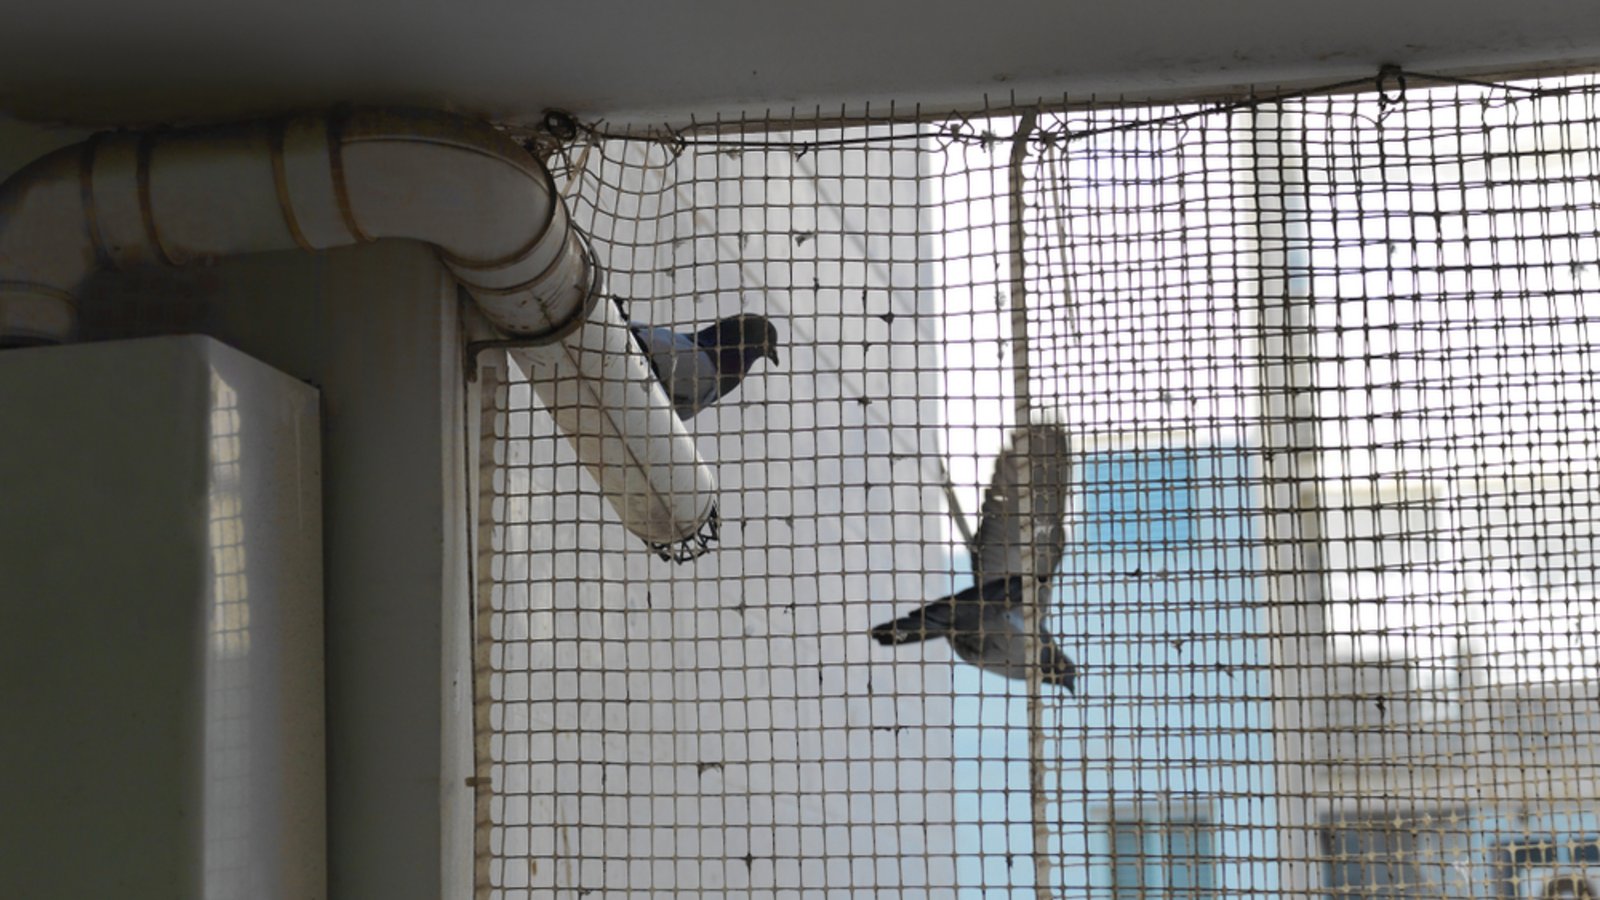 Vogelnetze sind die effektivste Abwehr gegen Tauben.Foto: victoras / shutterstock.com